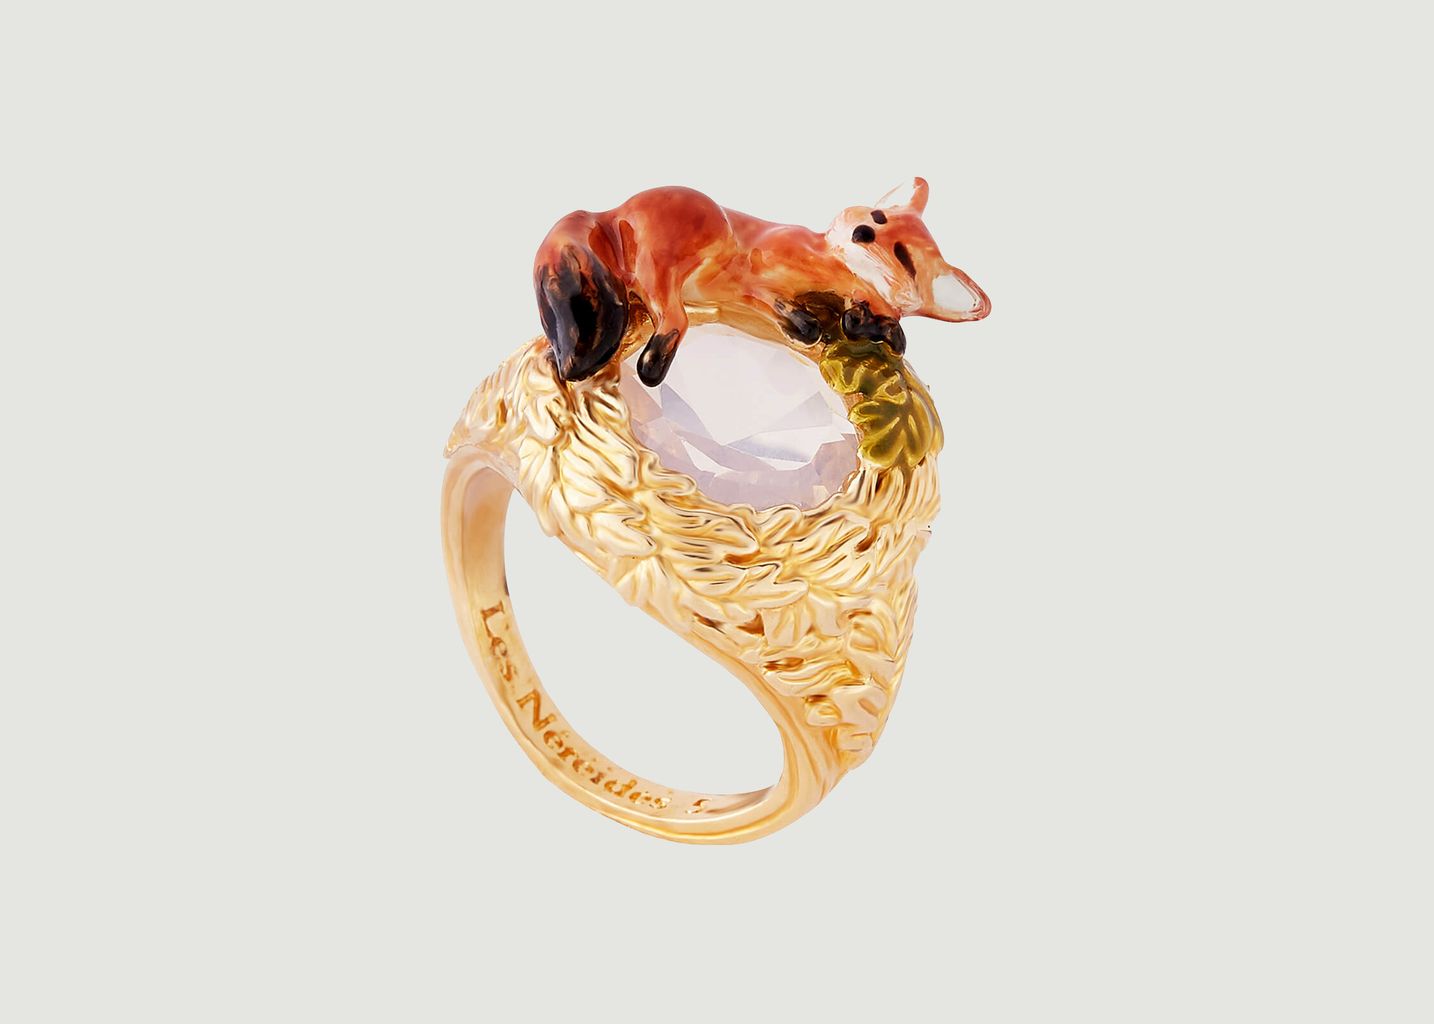 Fox cub with oak leaves wreath cocktail ring - Les Néréides